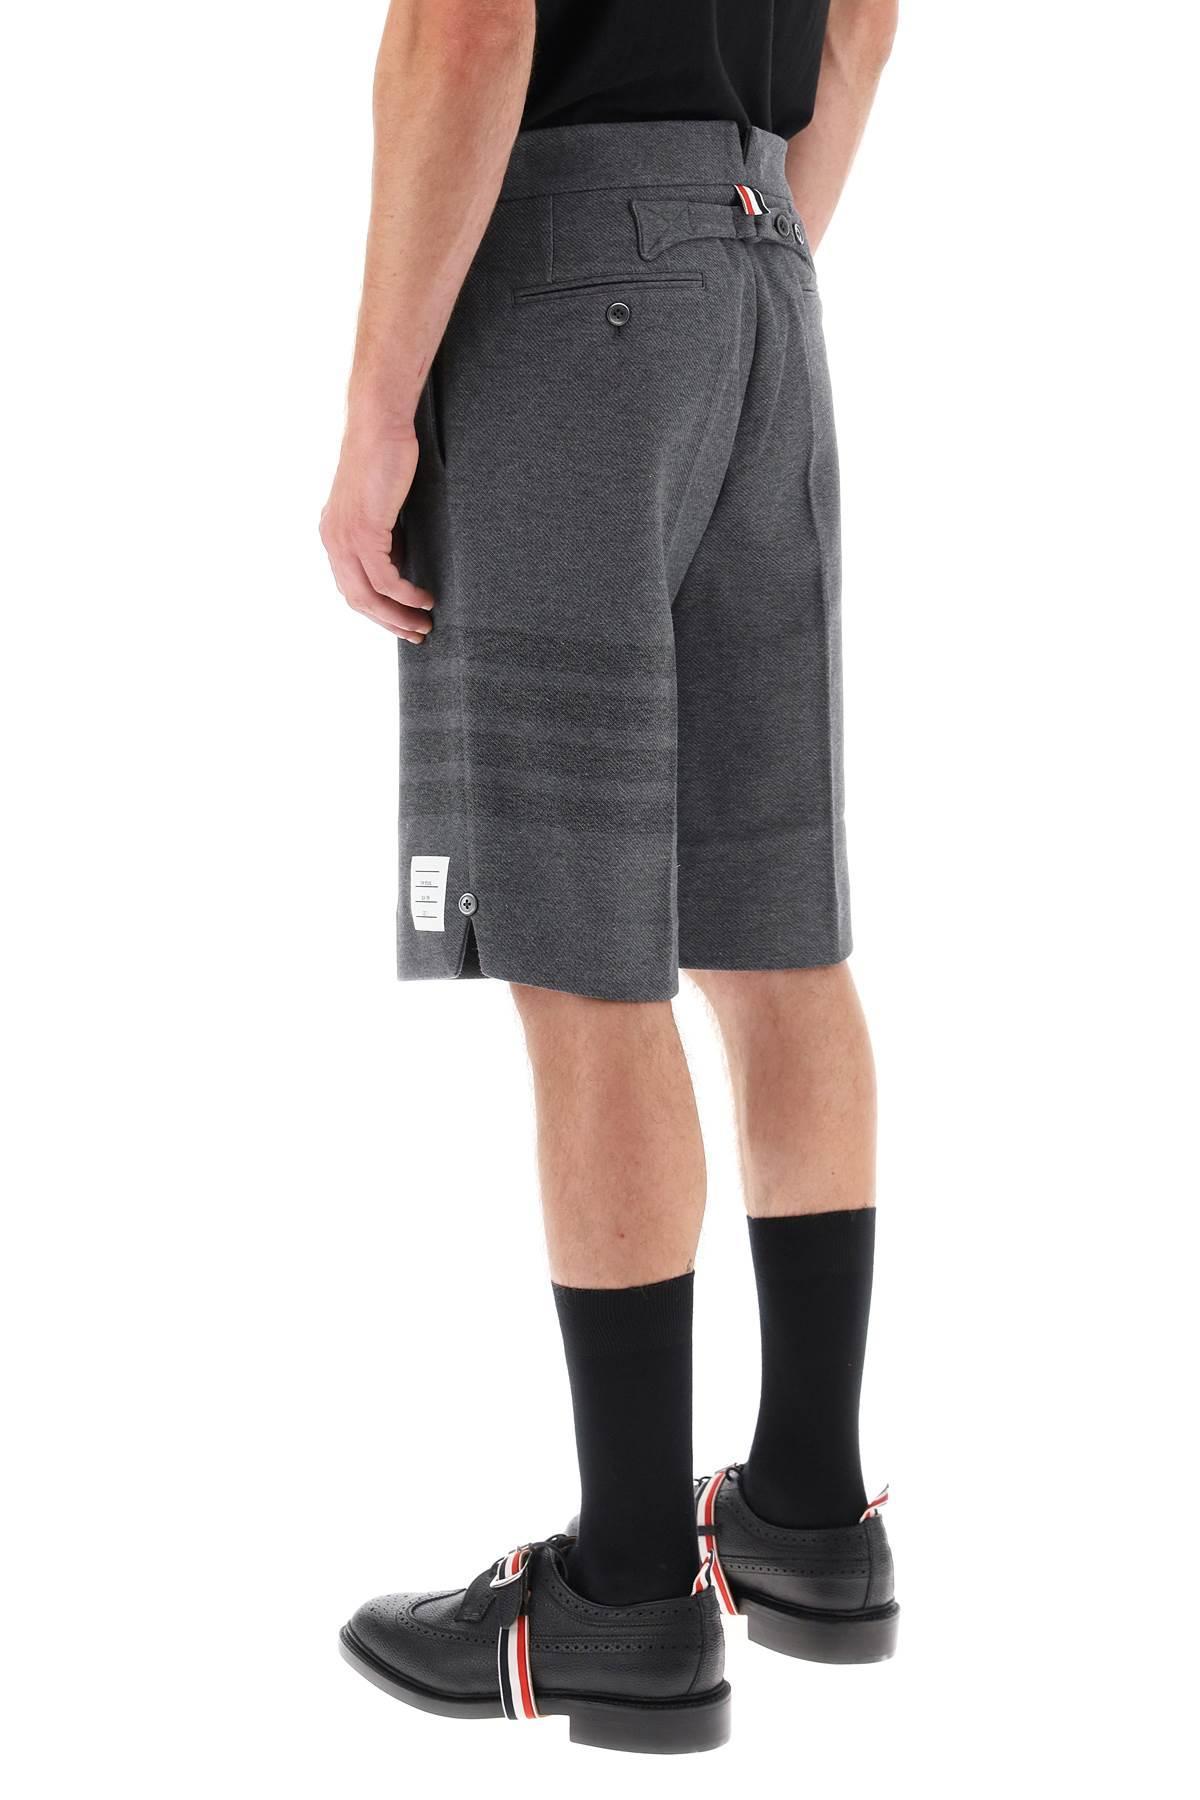 Thom Browne Grey 4-Bar Shorts